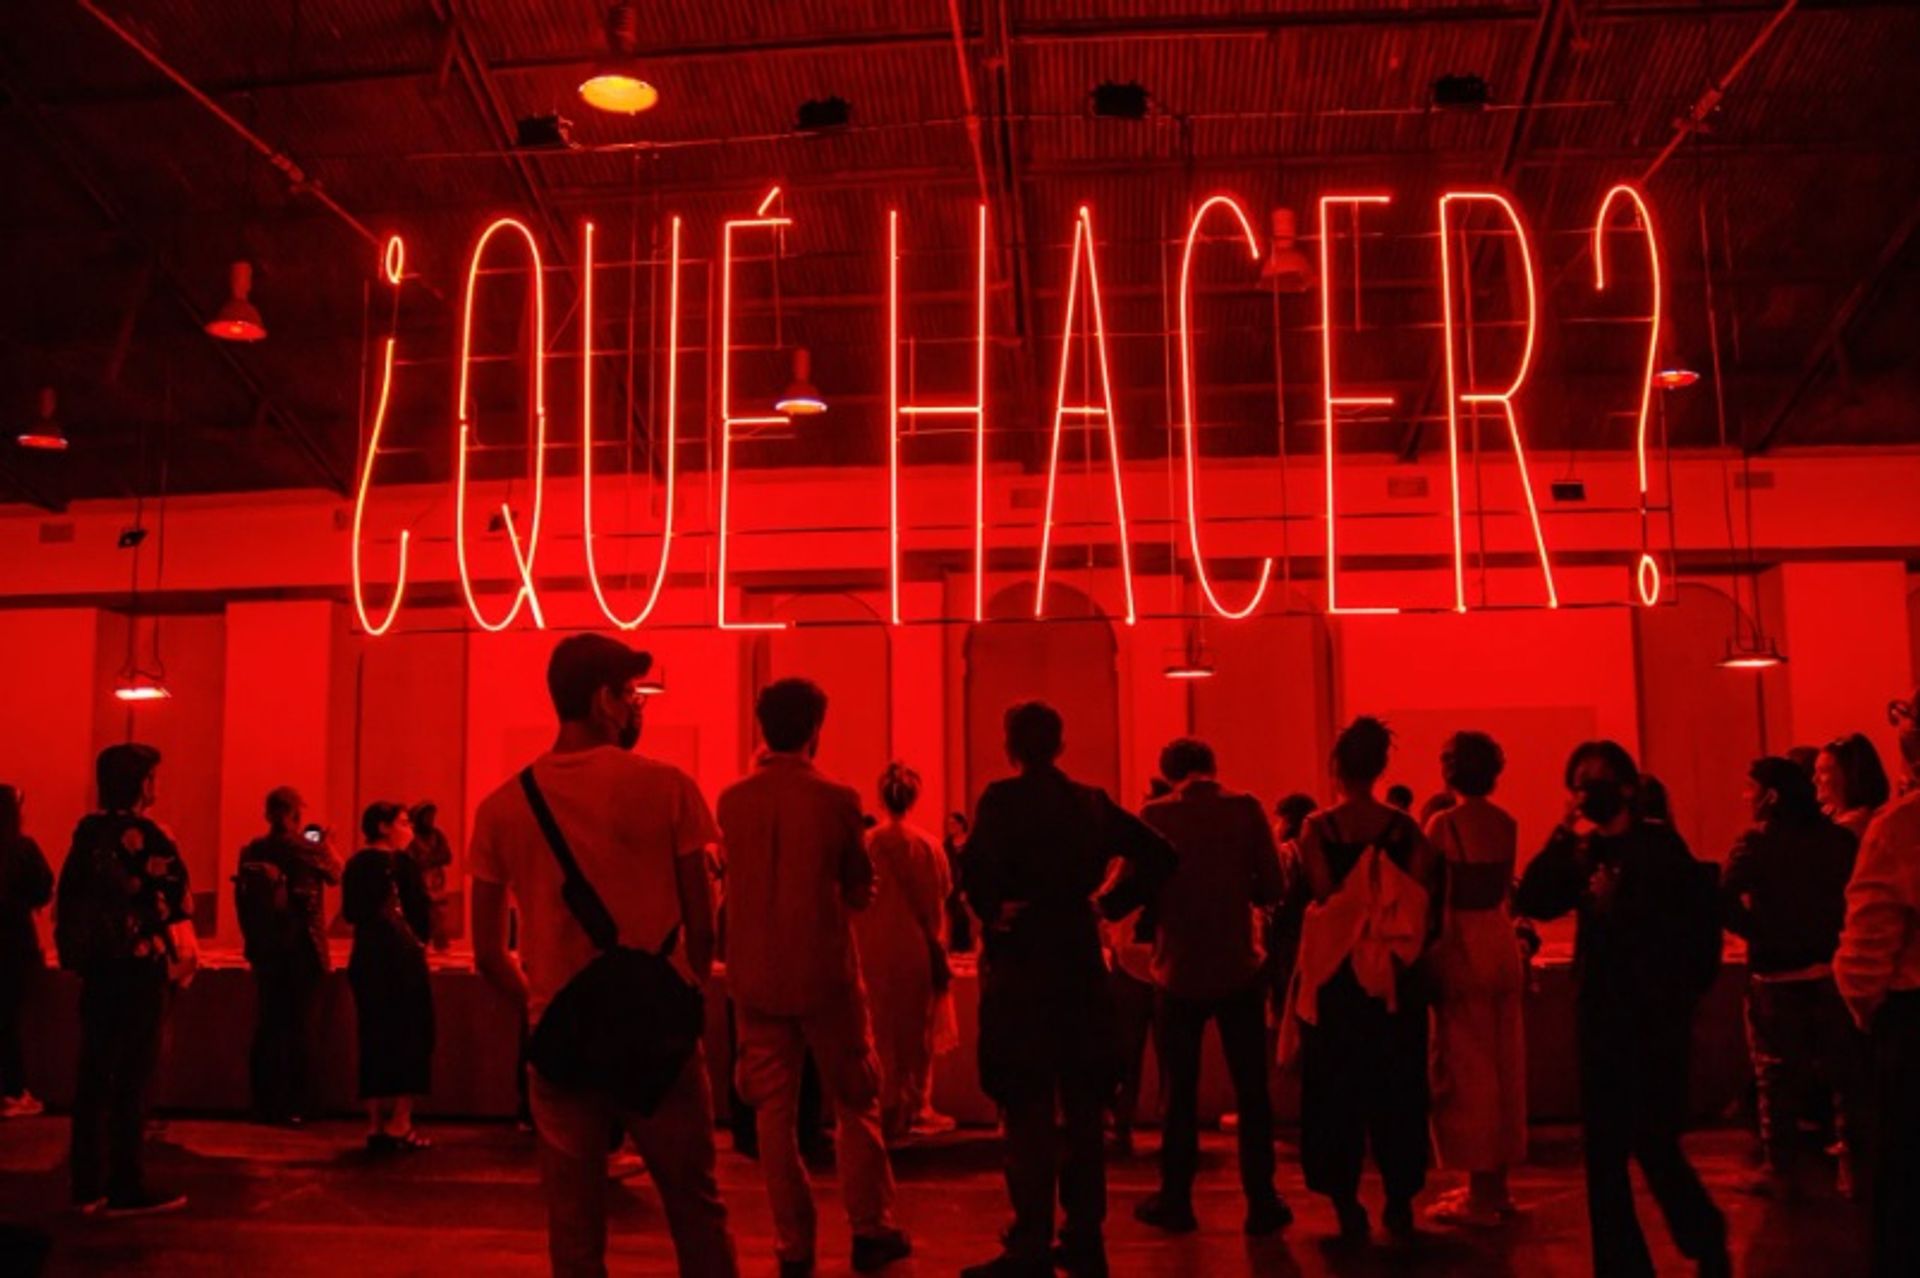 תצוגה של אלפרדו ג'אר Qué hacer? (2022) בהזמנת Hacer Noche : "הארץ המובטחת

באדיבות האמן ו-Hacer Noche. צילום: ג'ליל אולמדו